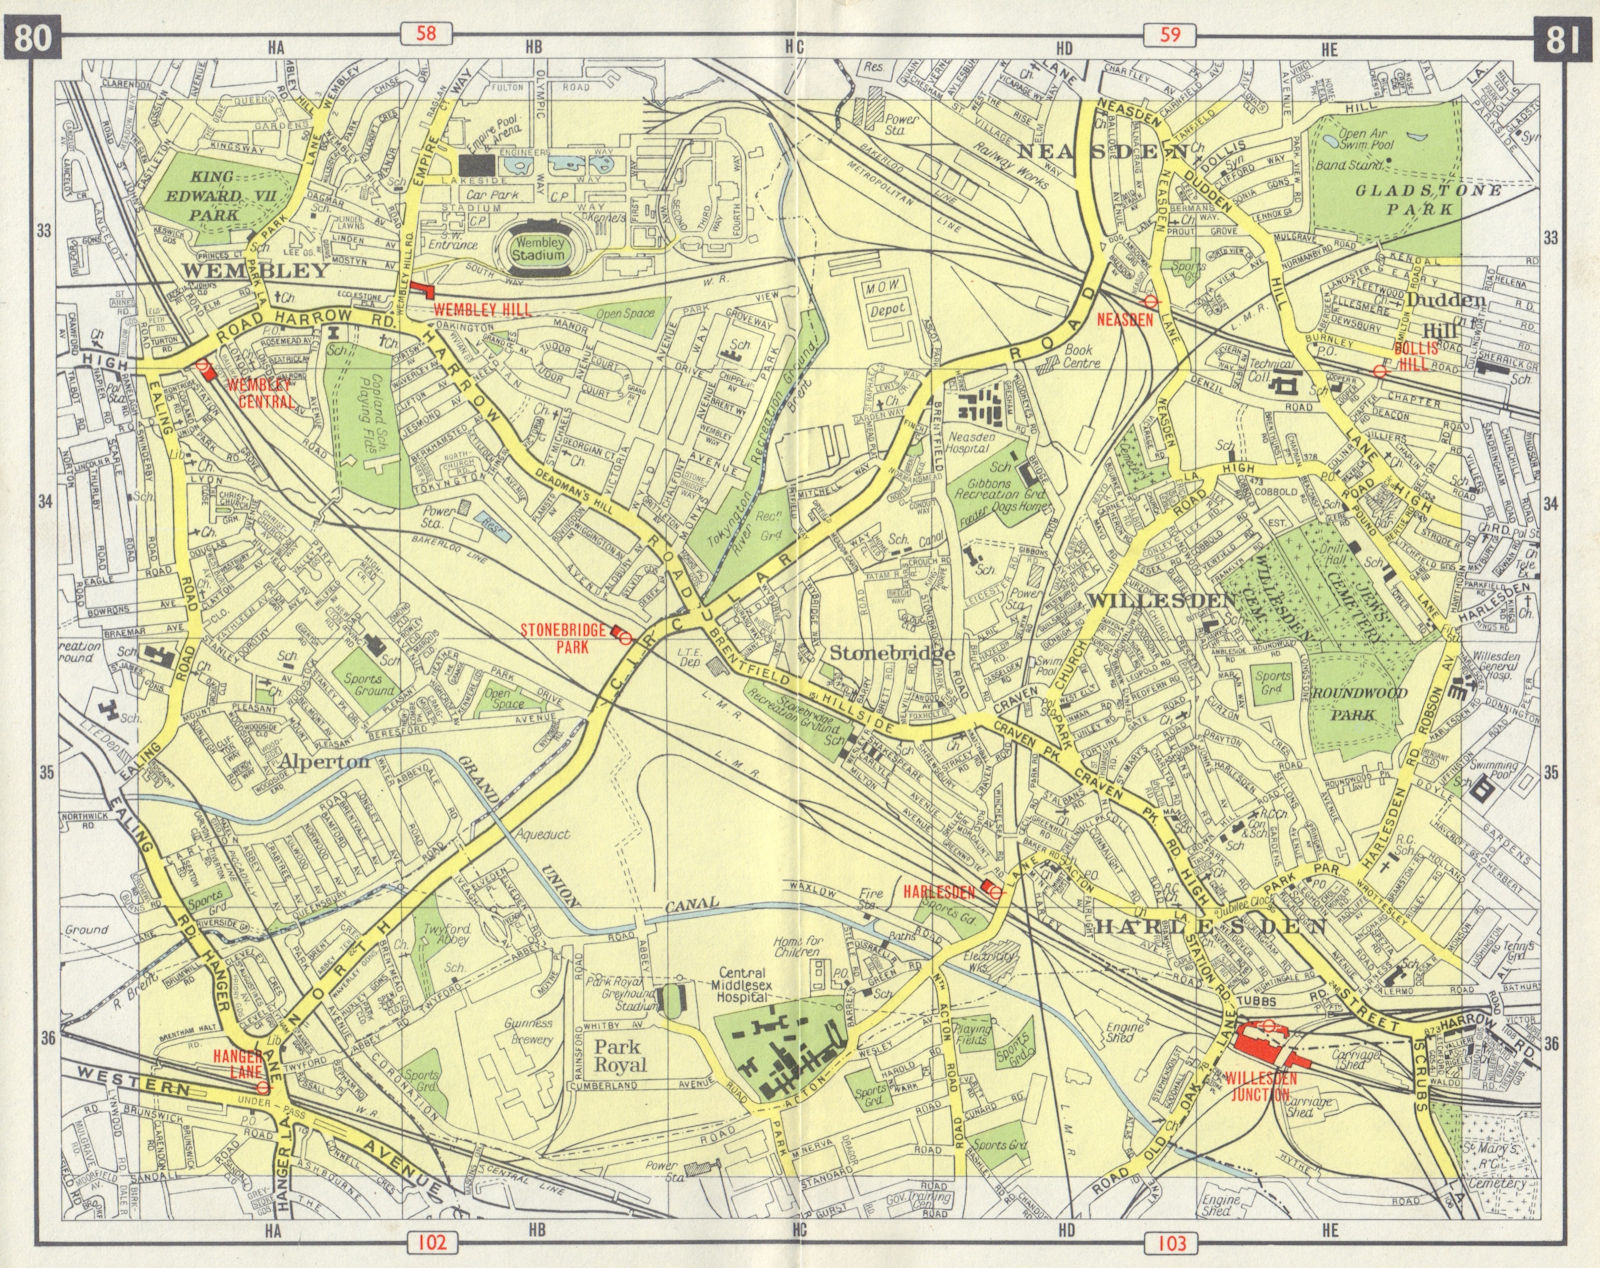 NW LONDON Wembley Alperton Harlesden Willesden Neasden Dudden Hill 1965 map